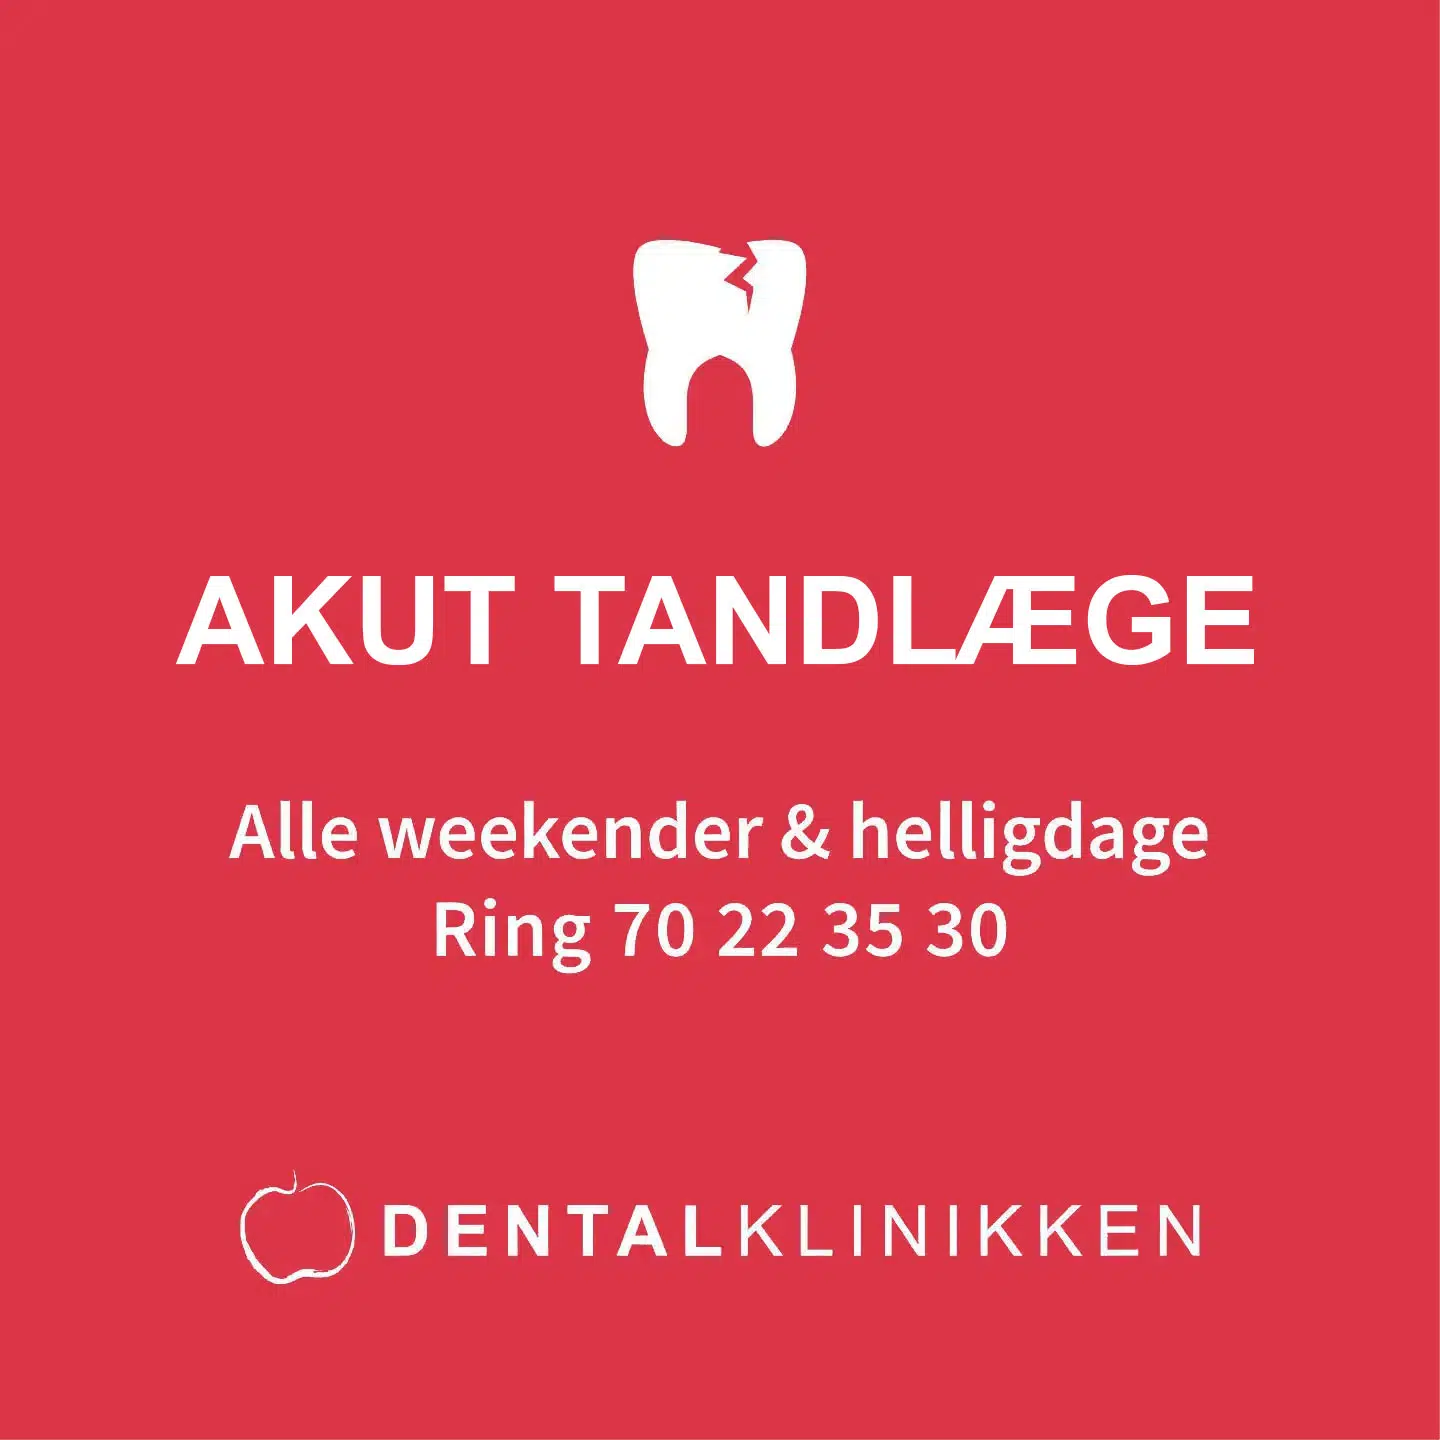 Akut tandlæge i København